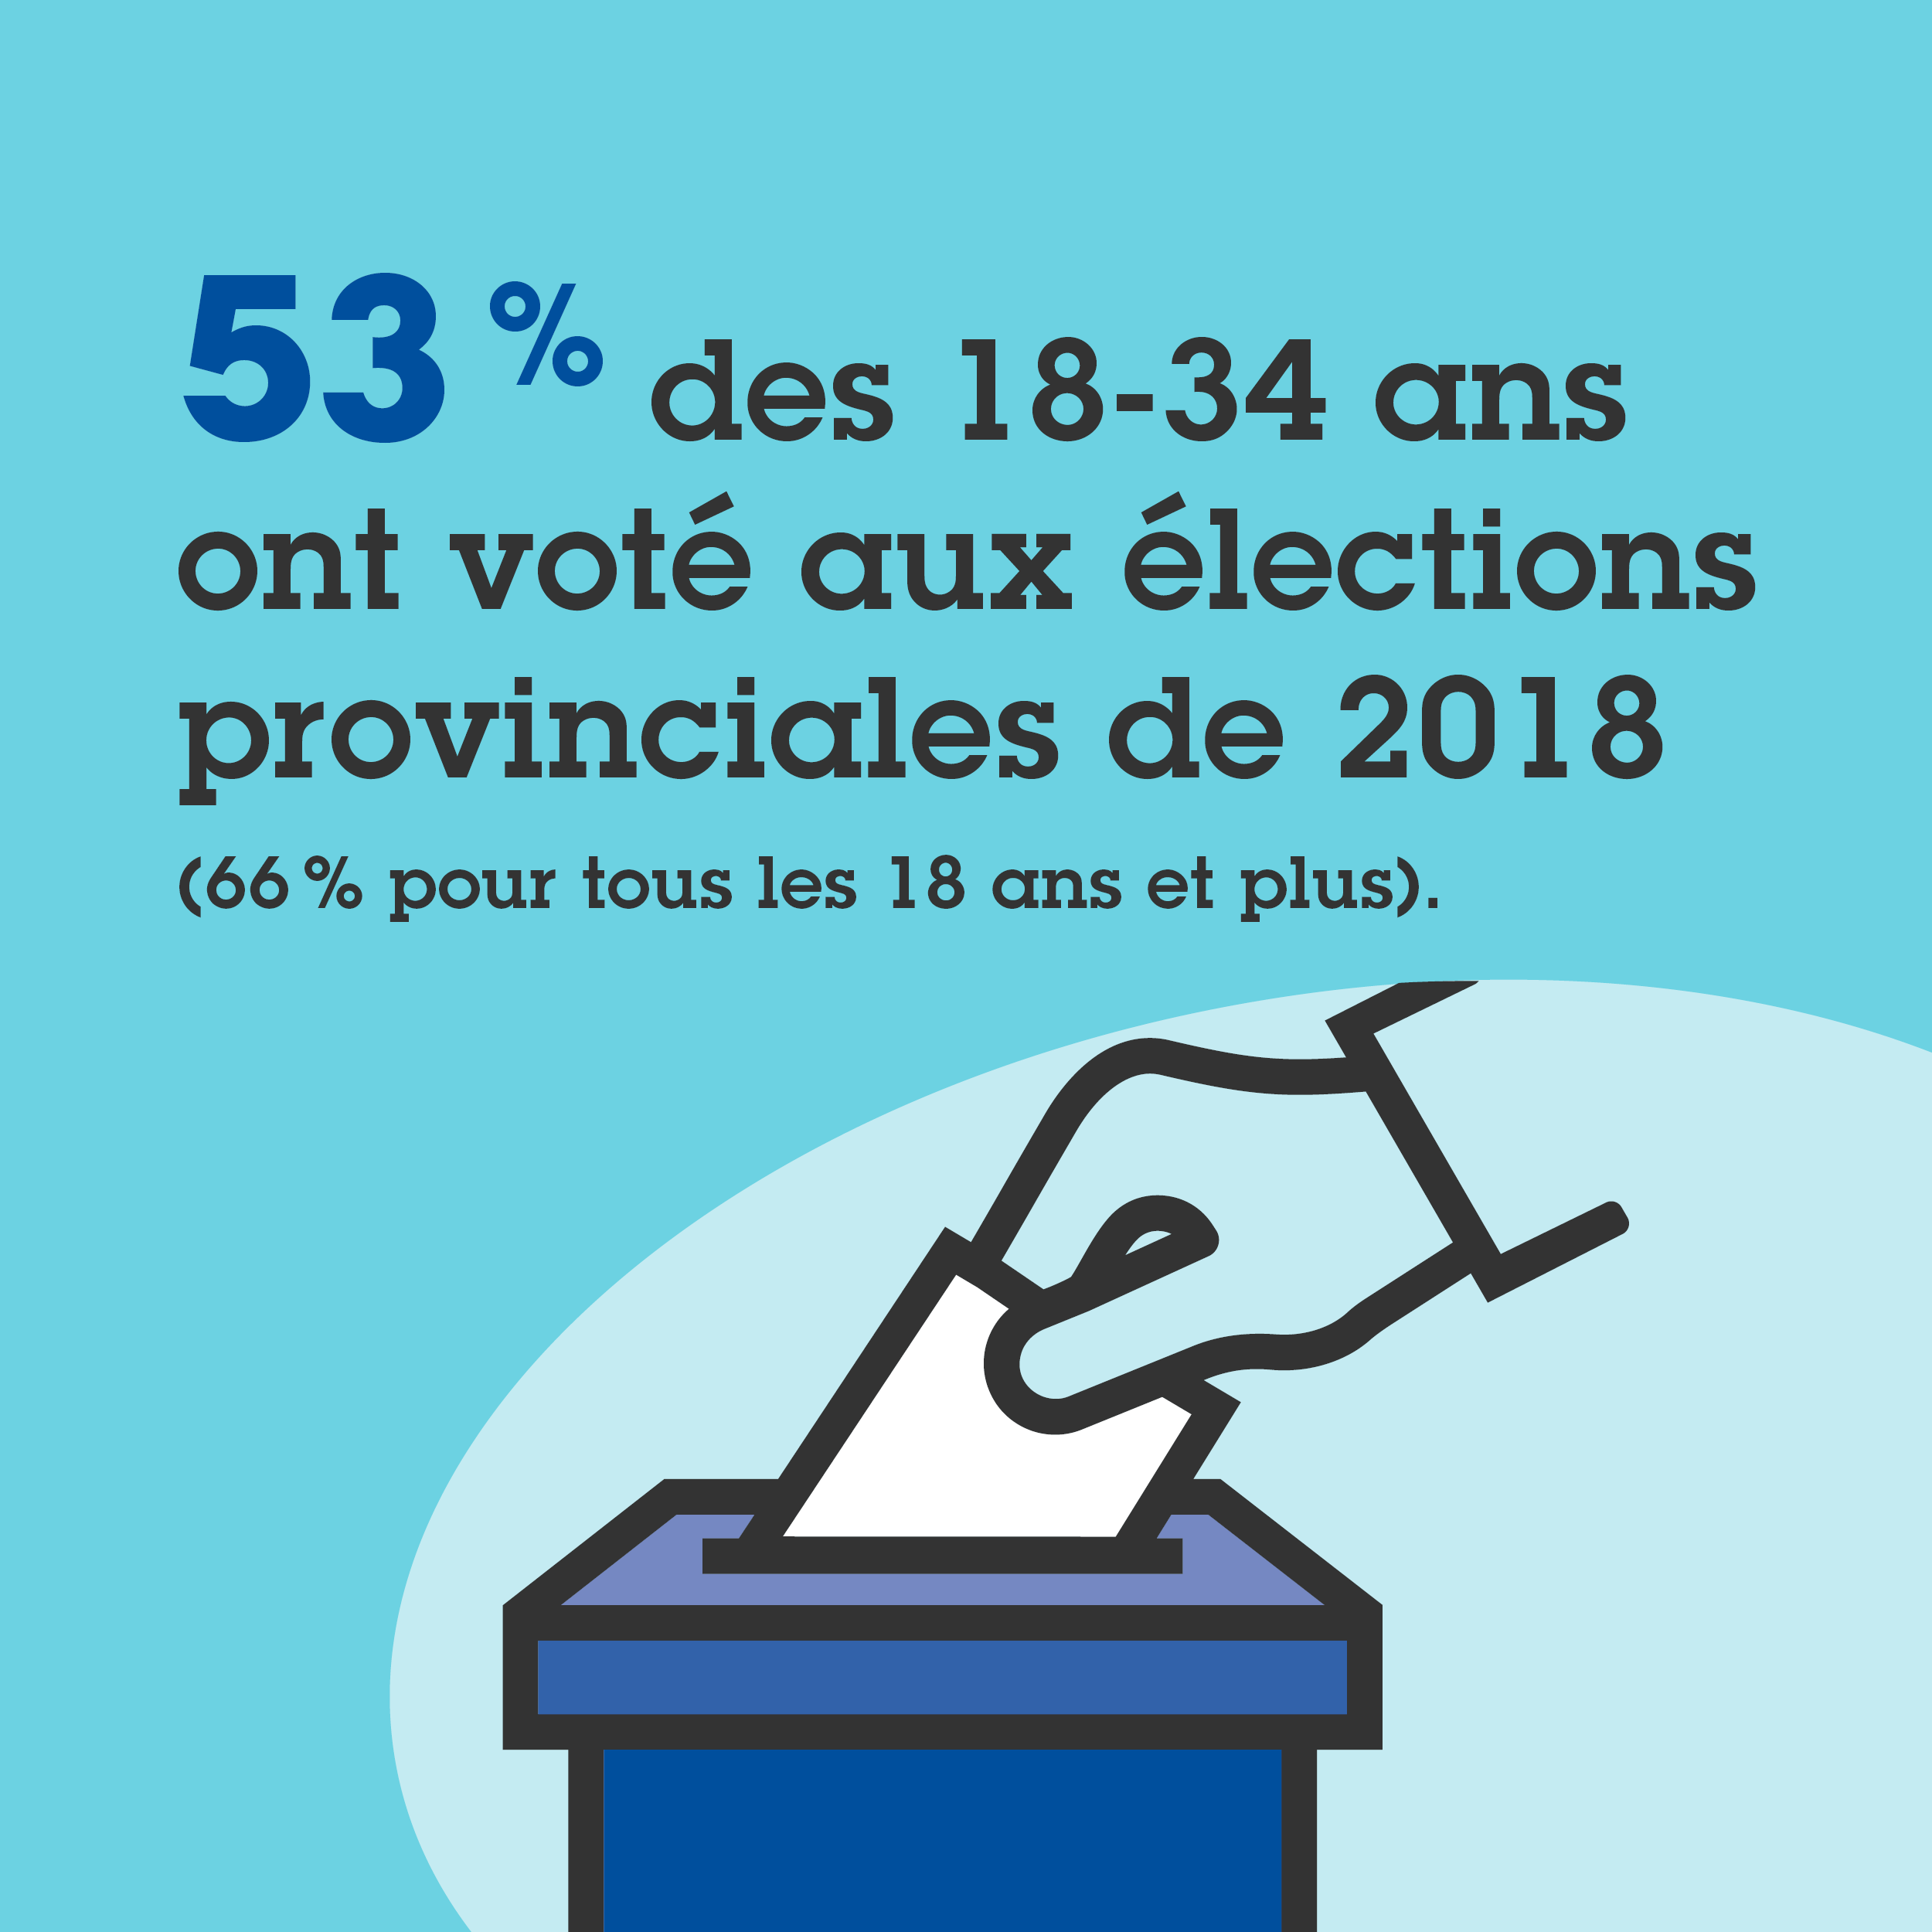 53 % des 18-34 ans ont voté aux élections provinciales de 2018, contre 66 % pour tous les 18 ans et plus.